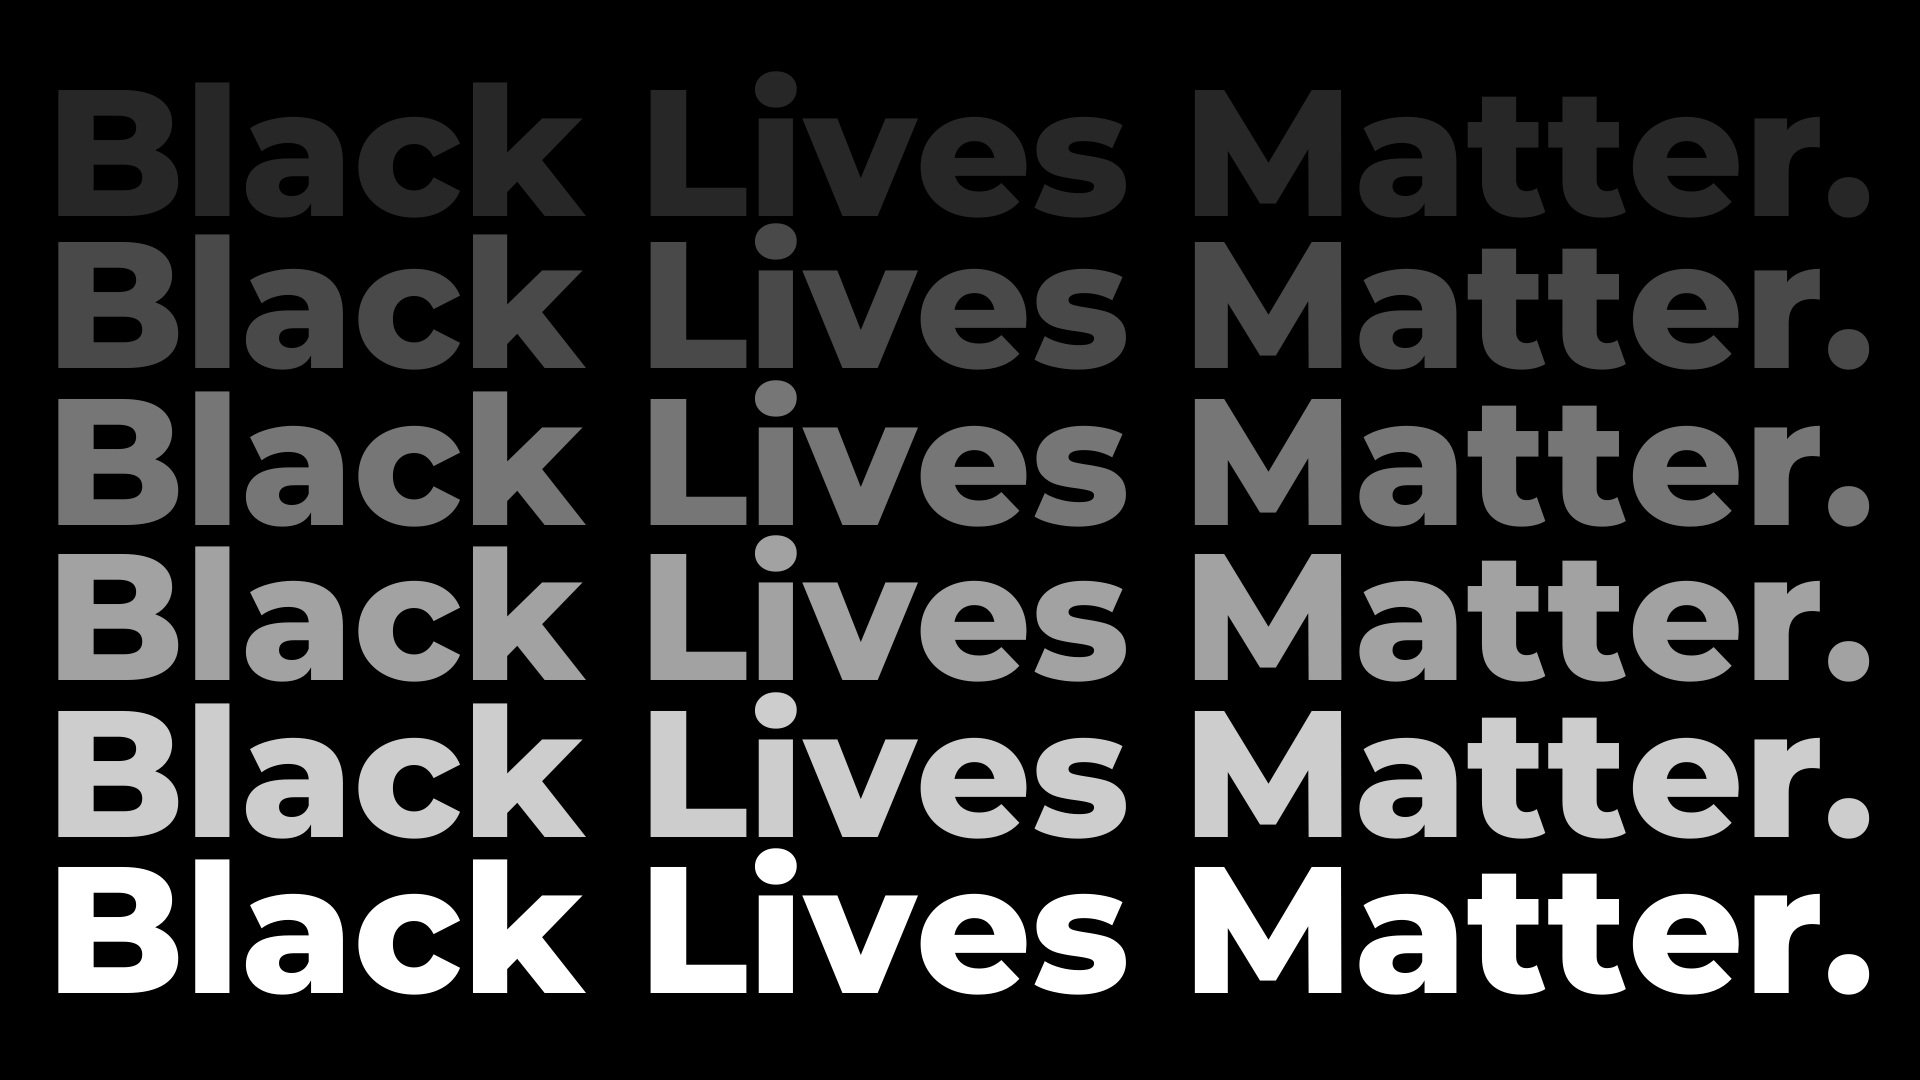 black lives matter image in hd